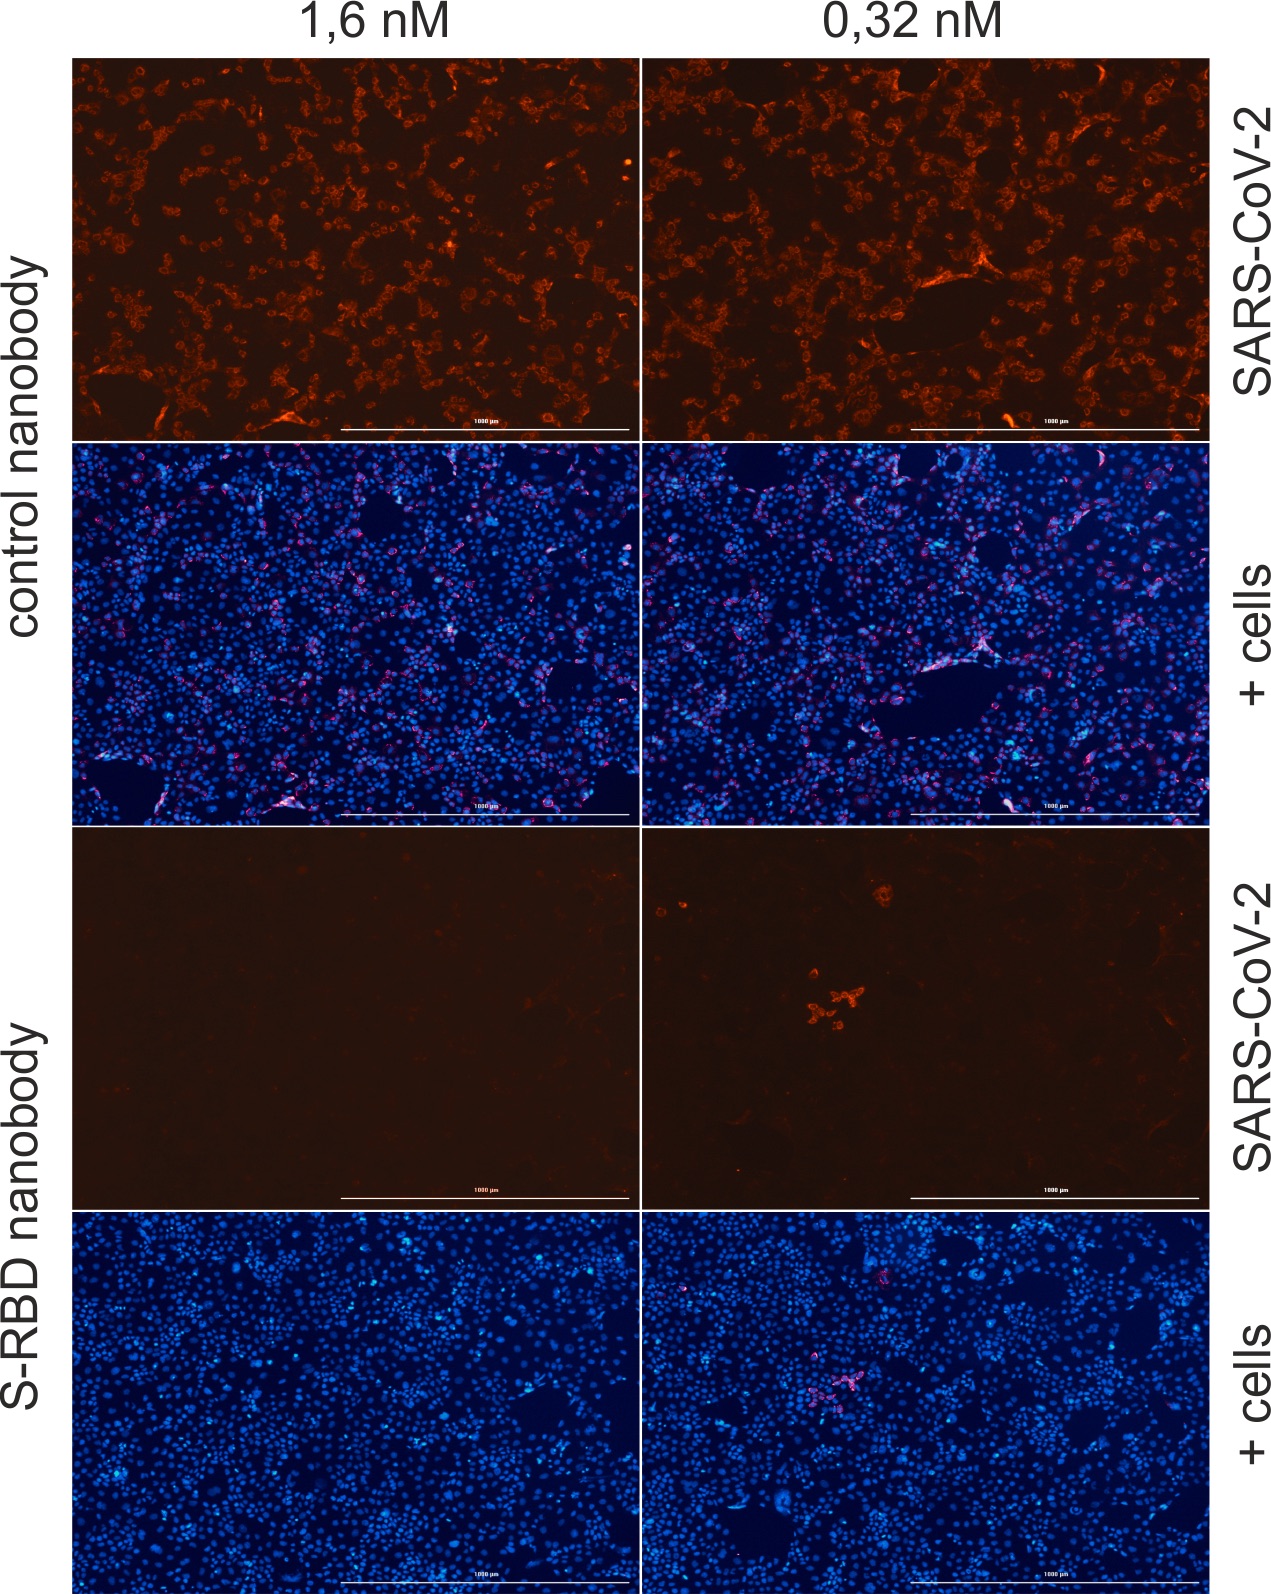 In zwei Spalten nebeneinander angeordnete Fluoreszenzmikroskopie-Ausschnitte von unterschiedlich angefärbten humanen Epithelzellen. Die obere Reihe zeigt rot gefärbte Zellen, da das Virus eindringen konnte, die darunterliegende Reihe zeigt die dazugehörigen blauen Zellkerne. Die dritte Reihe zeigt ungefärbte Zellen, da das eindringen des Virus durch den Nanobody verhindert wurde. In der vierten Reihe sind die dazugehörigen Zellkerne sichtbar.